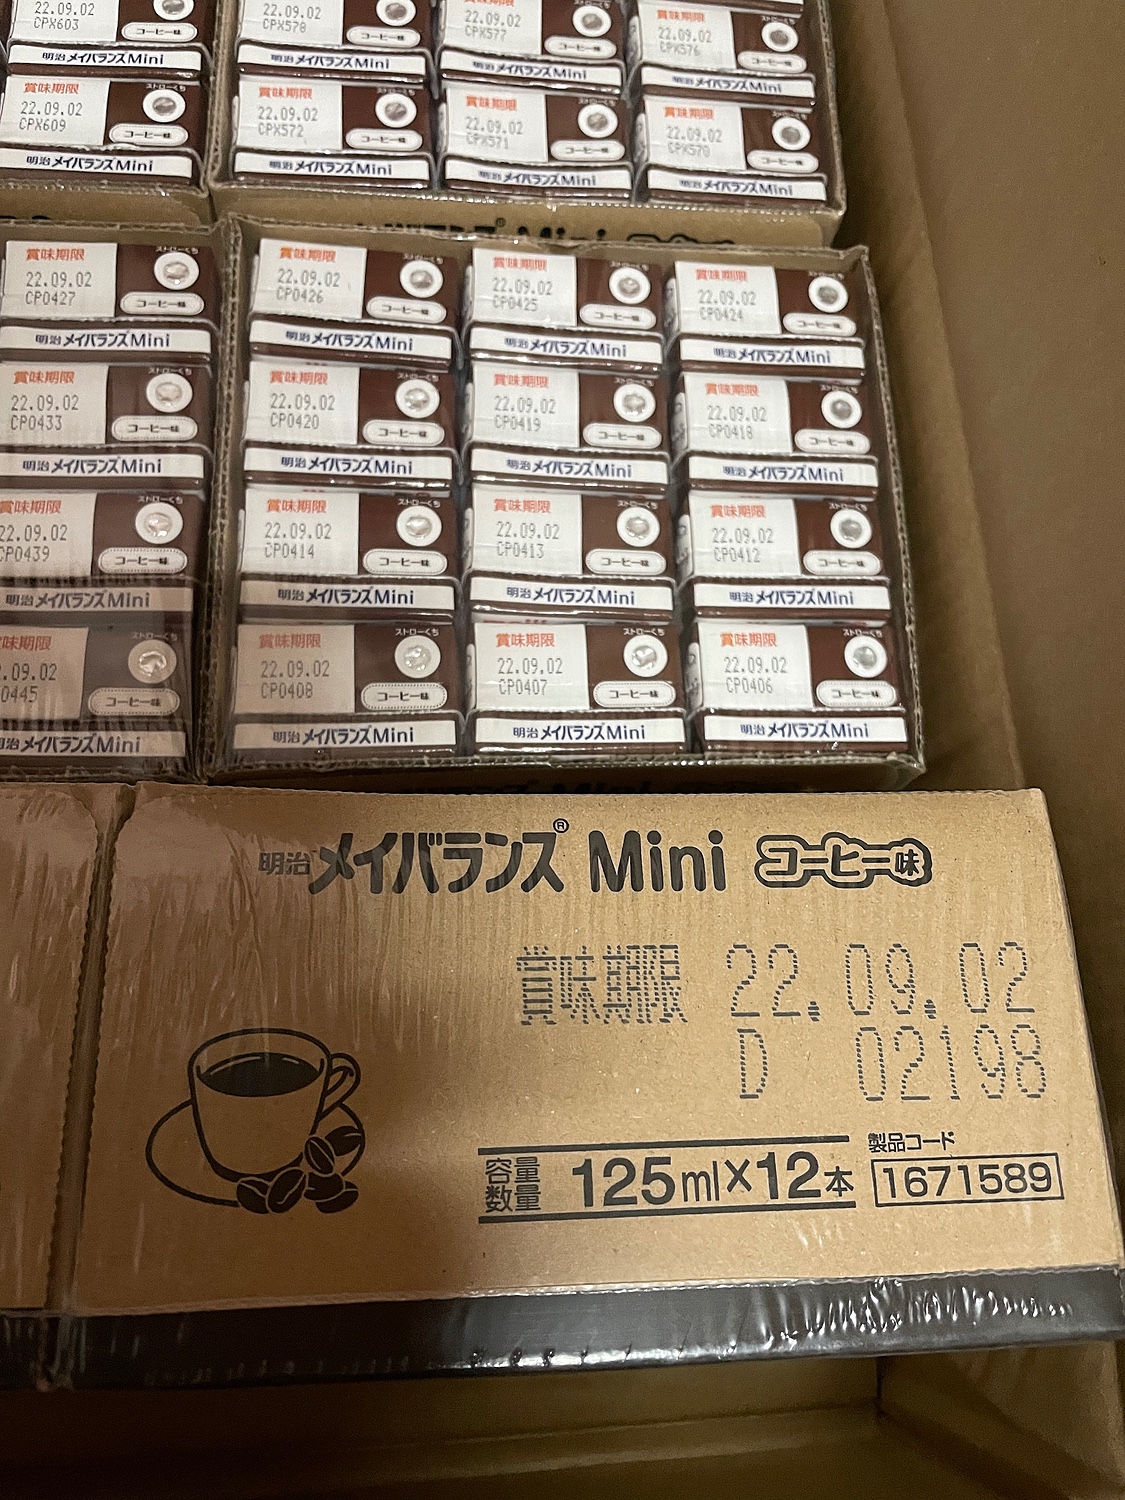 明治メイバランスミニ コーヒー味 24本×3ケース natif.com.co